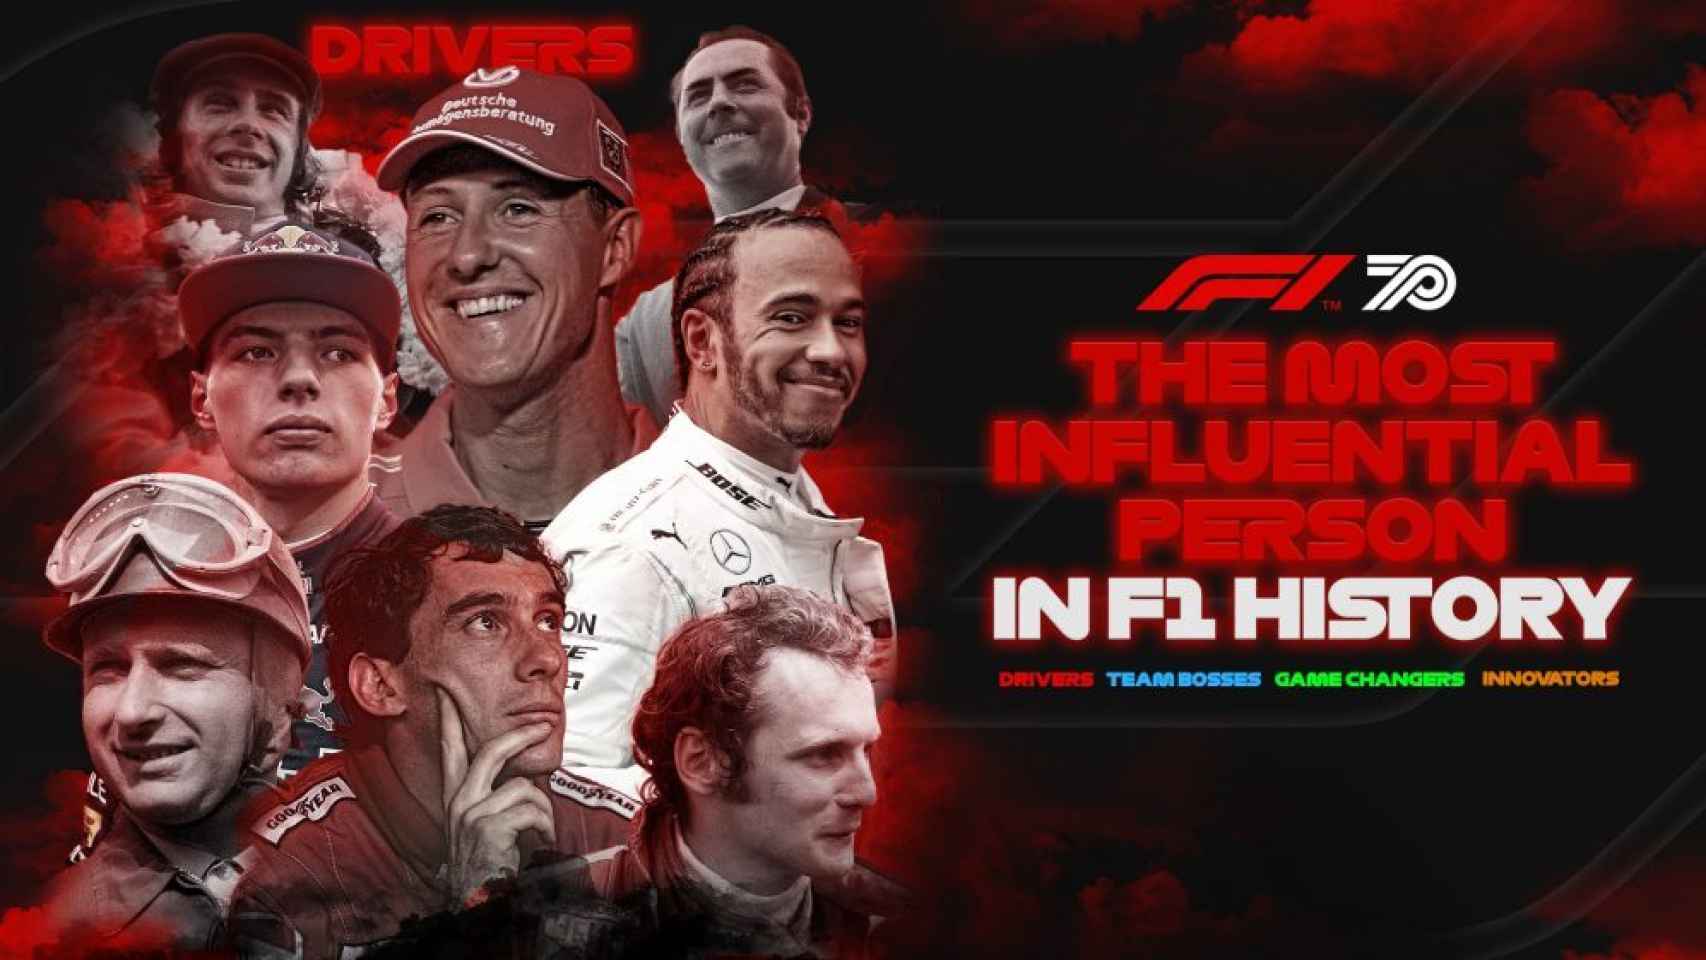 El campeonato organizado por la Fórmula 1 para elegir al piloto más influyente de su historia